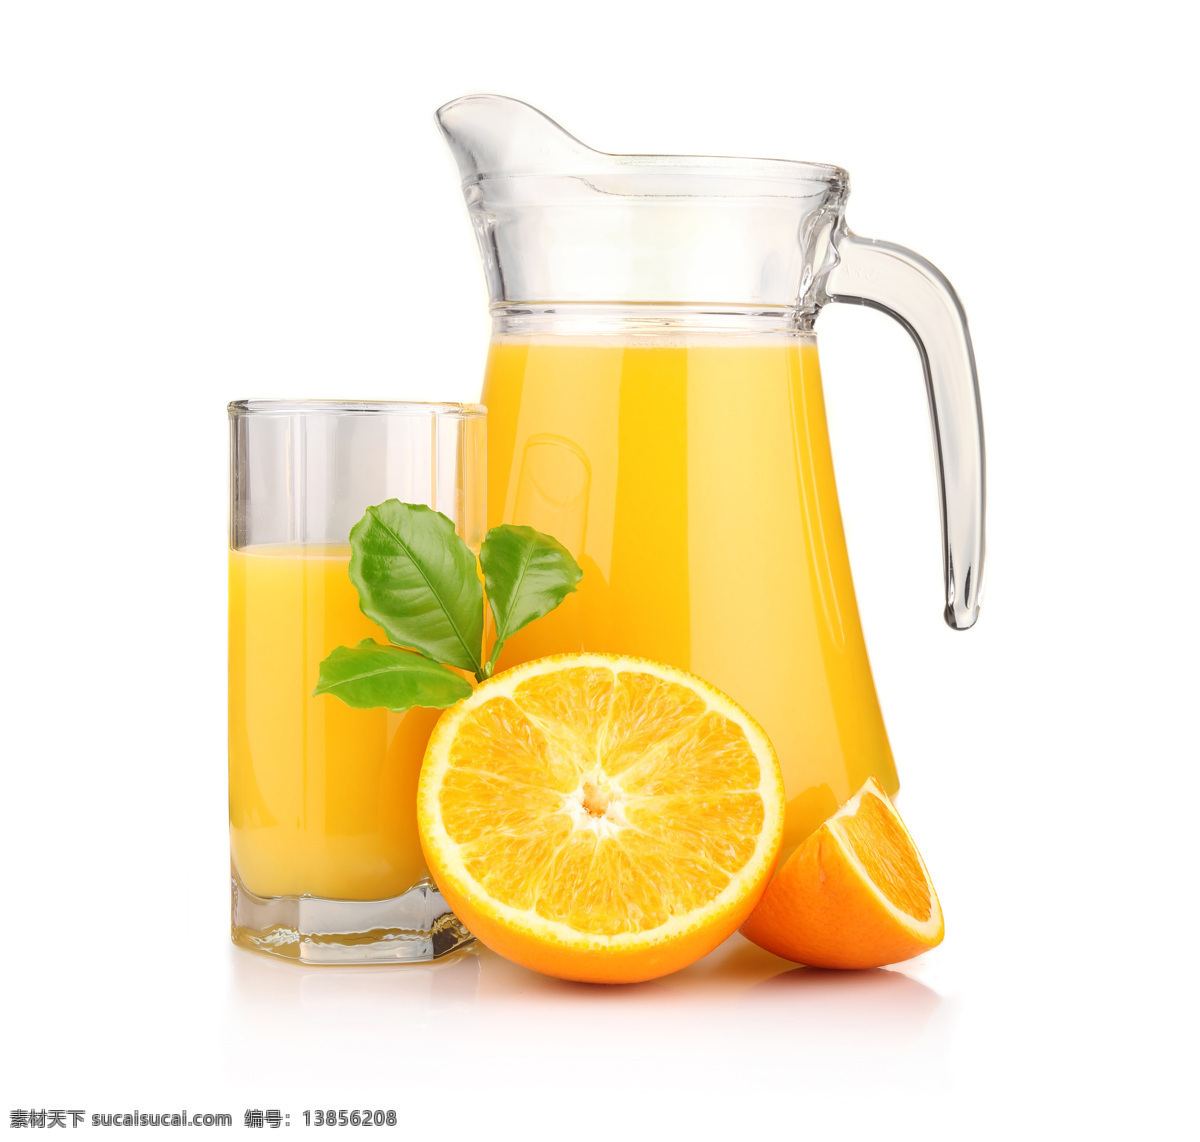 鲜榨橙汁 橙子 橙汁 柳橙汁 果汁 水果 饮料 解渴 食品饮料 饮料酒水 餐饮美食